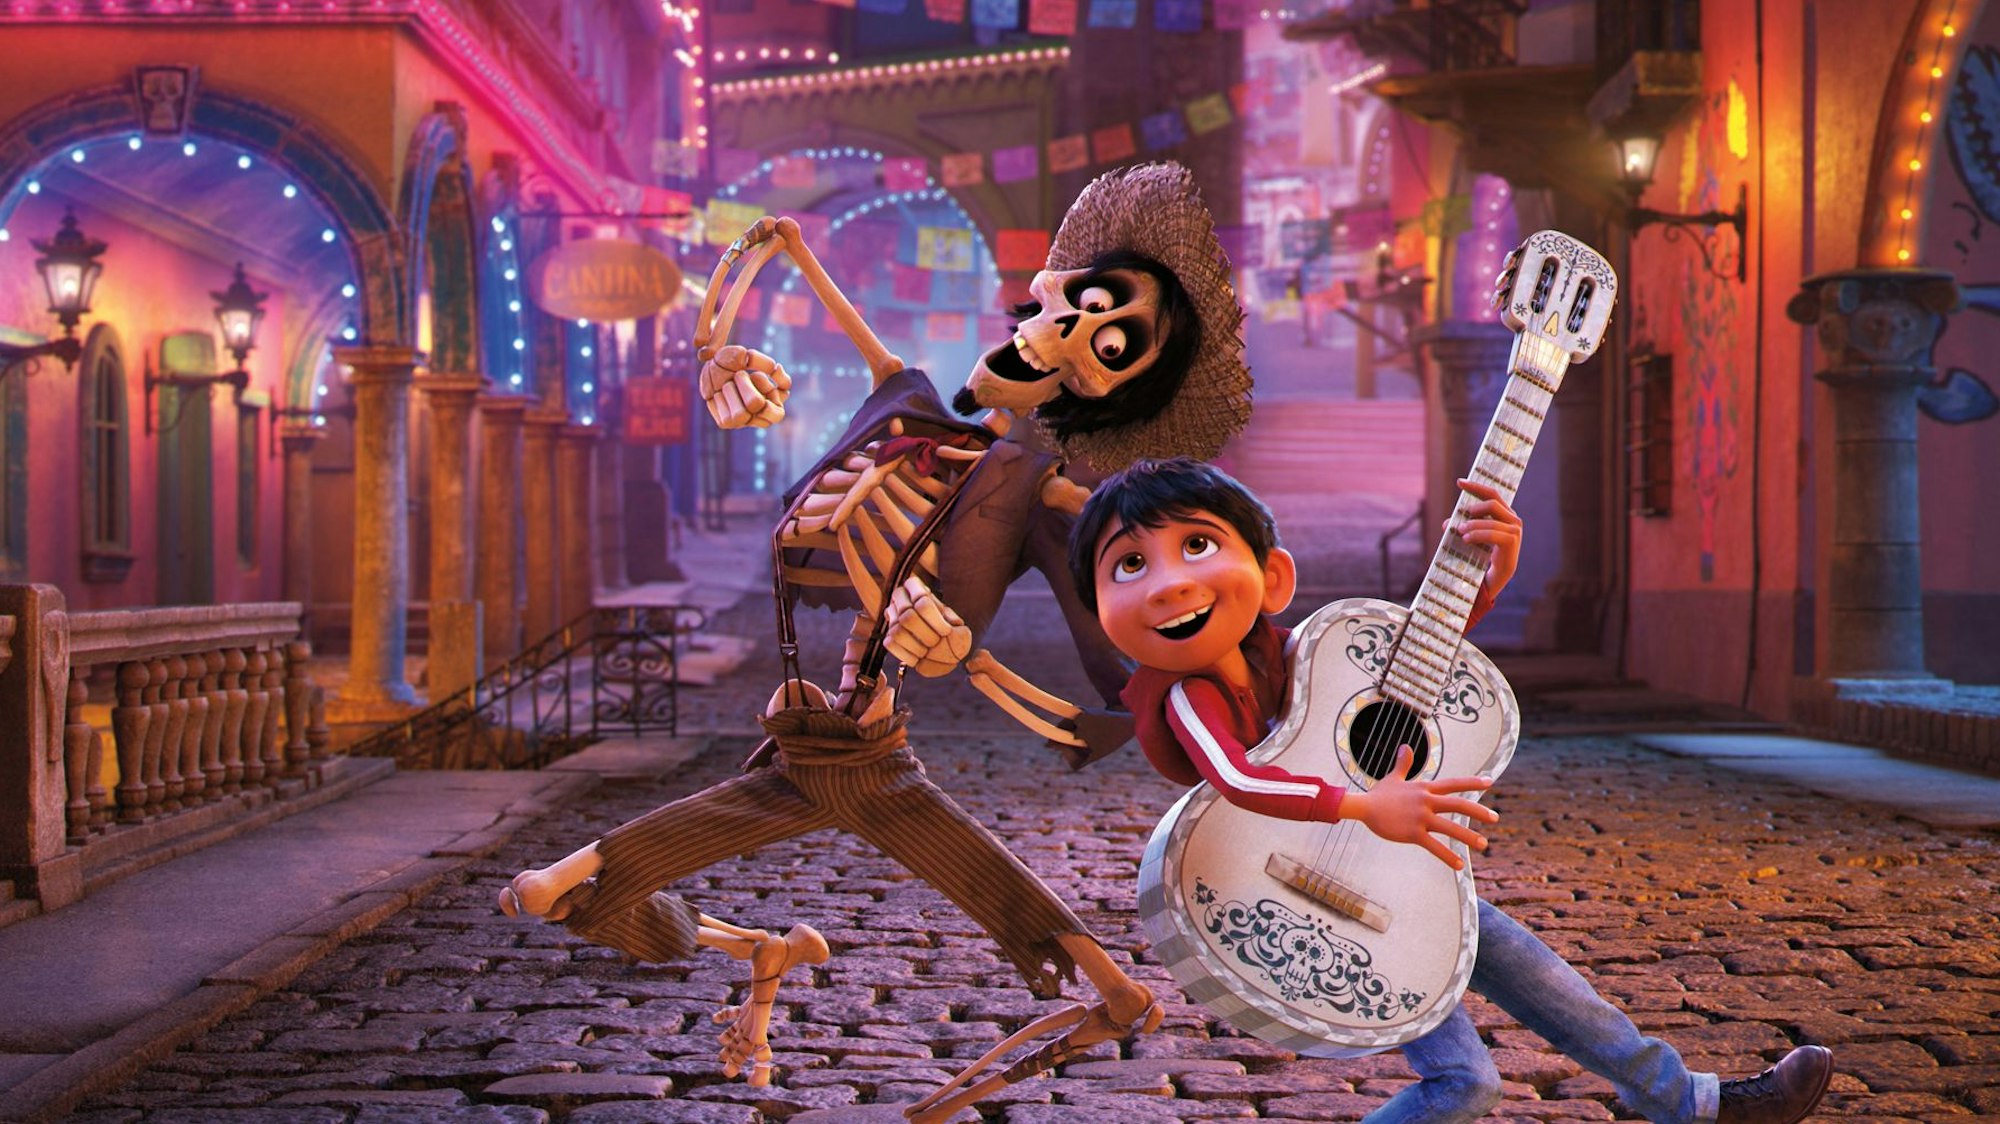 Das Bild zeigt eine Szene aus dem Film „Coco“, in dem der junge Miguel mit Héctor tanzt, der hier schon in der Welt der Toten ist und somit als Skelett dargestellt wird.